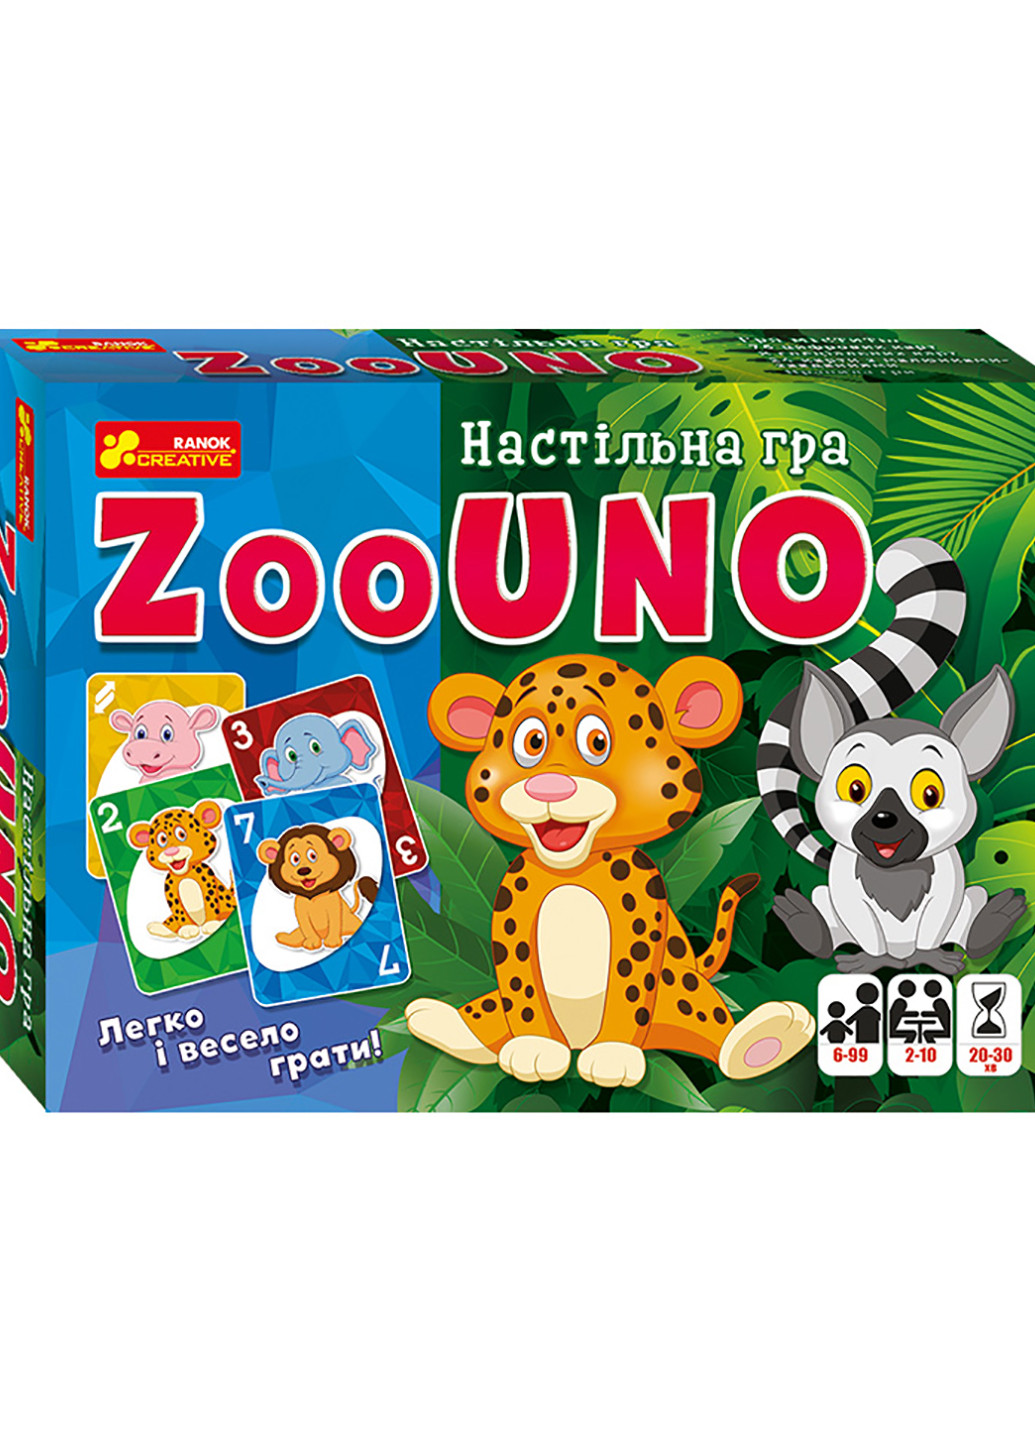 Настольная игра Зооуно Ranok-Creative 12120067у (255259749)